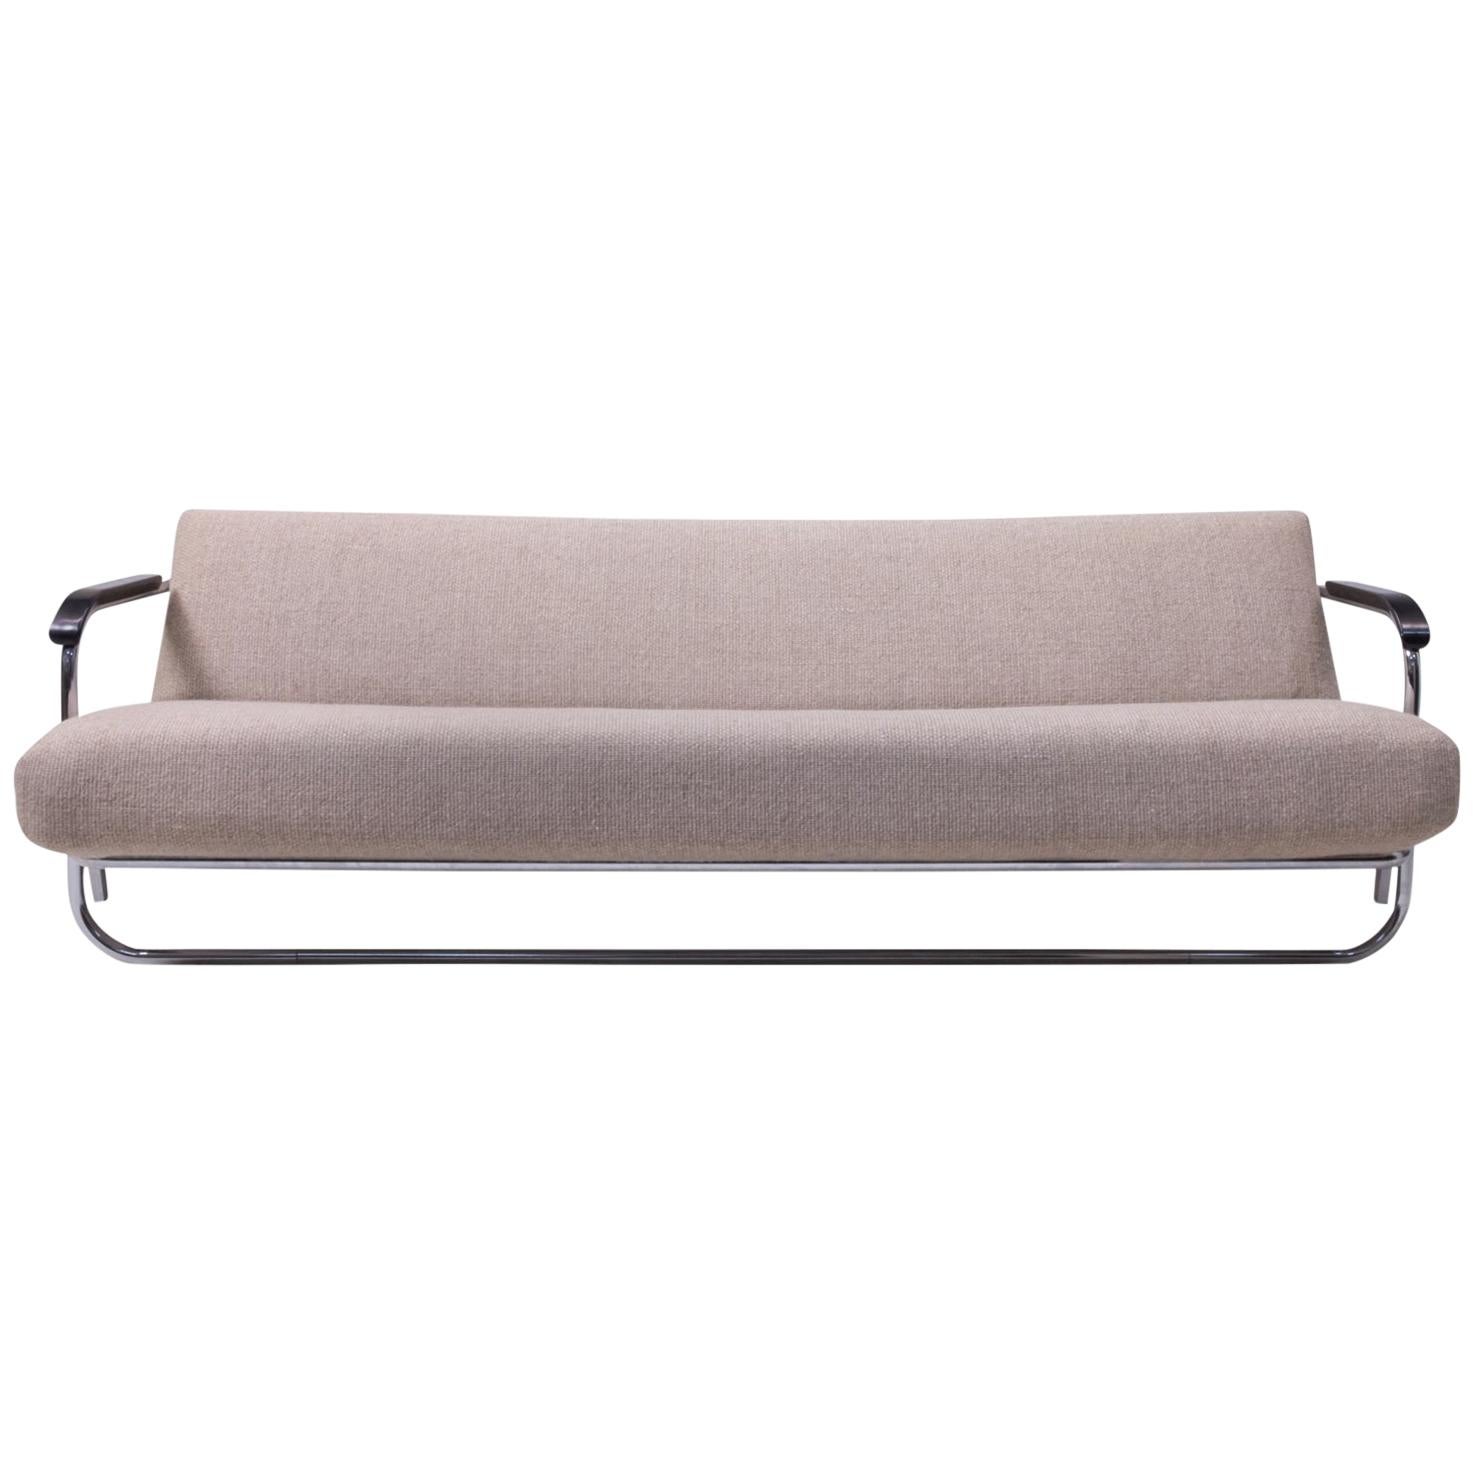 Alvar Aalto Design Classic Sofa No 36 for Wohnbedarf Basel